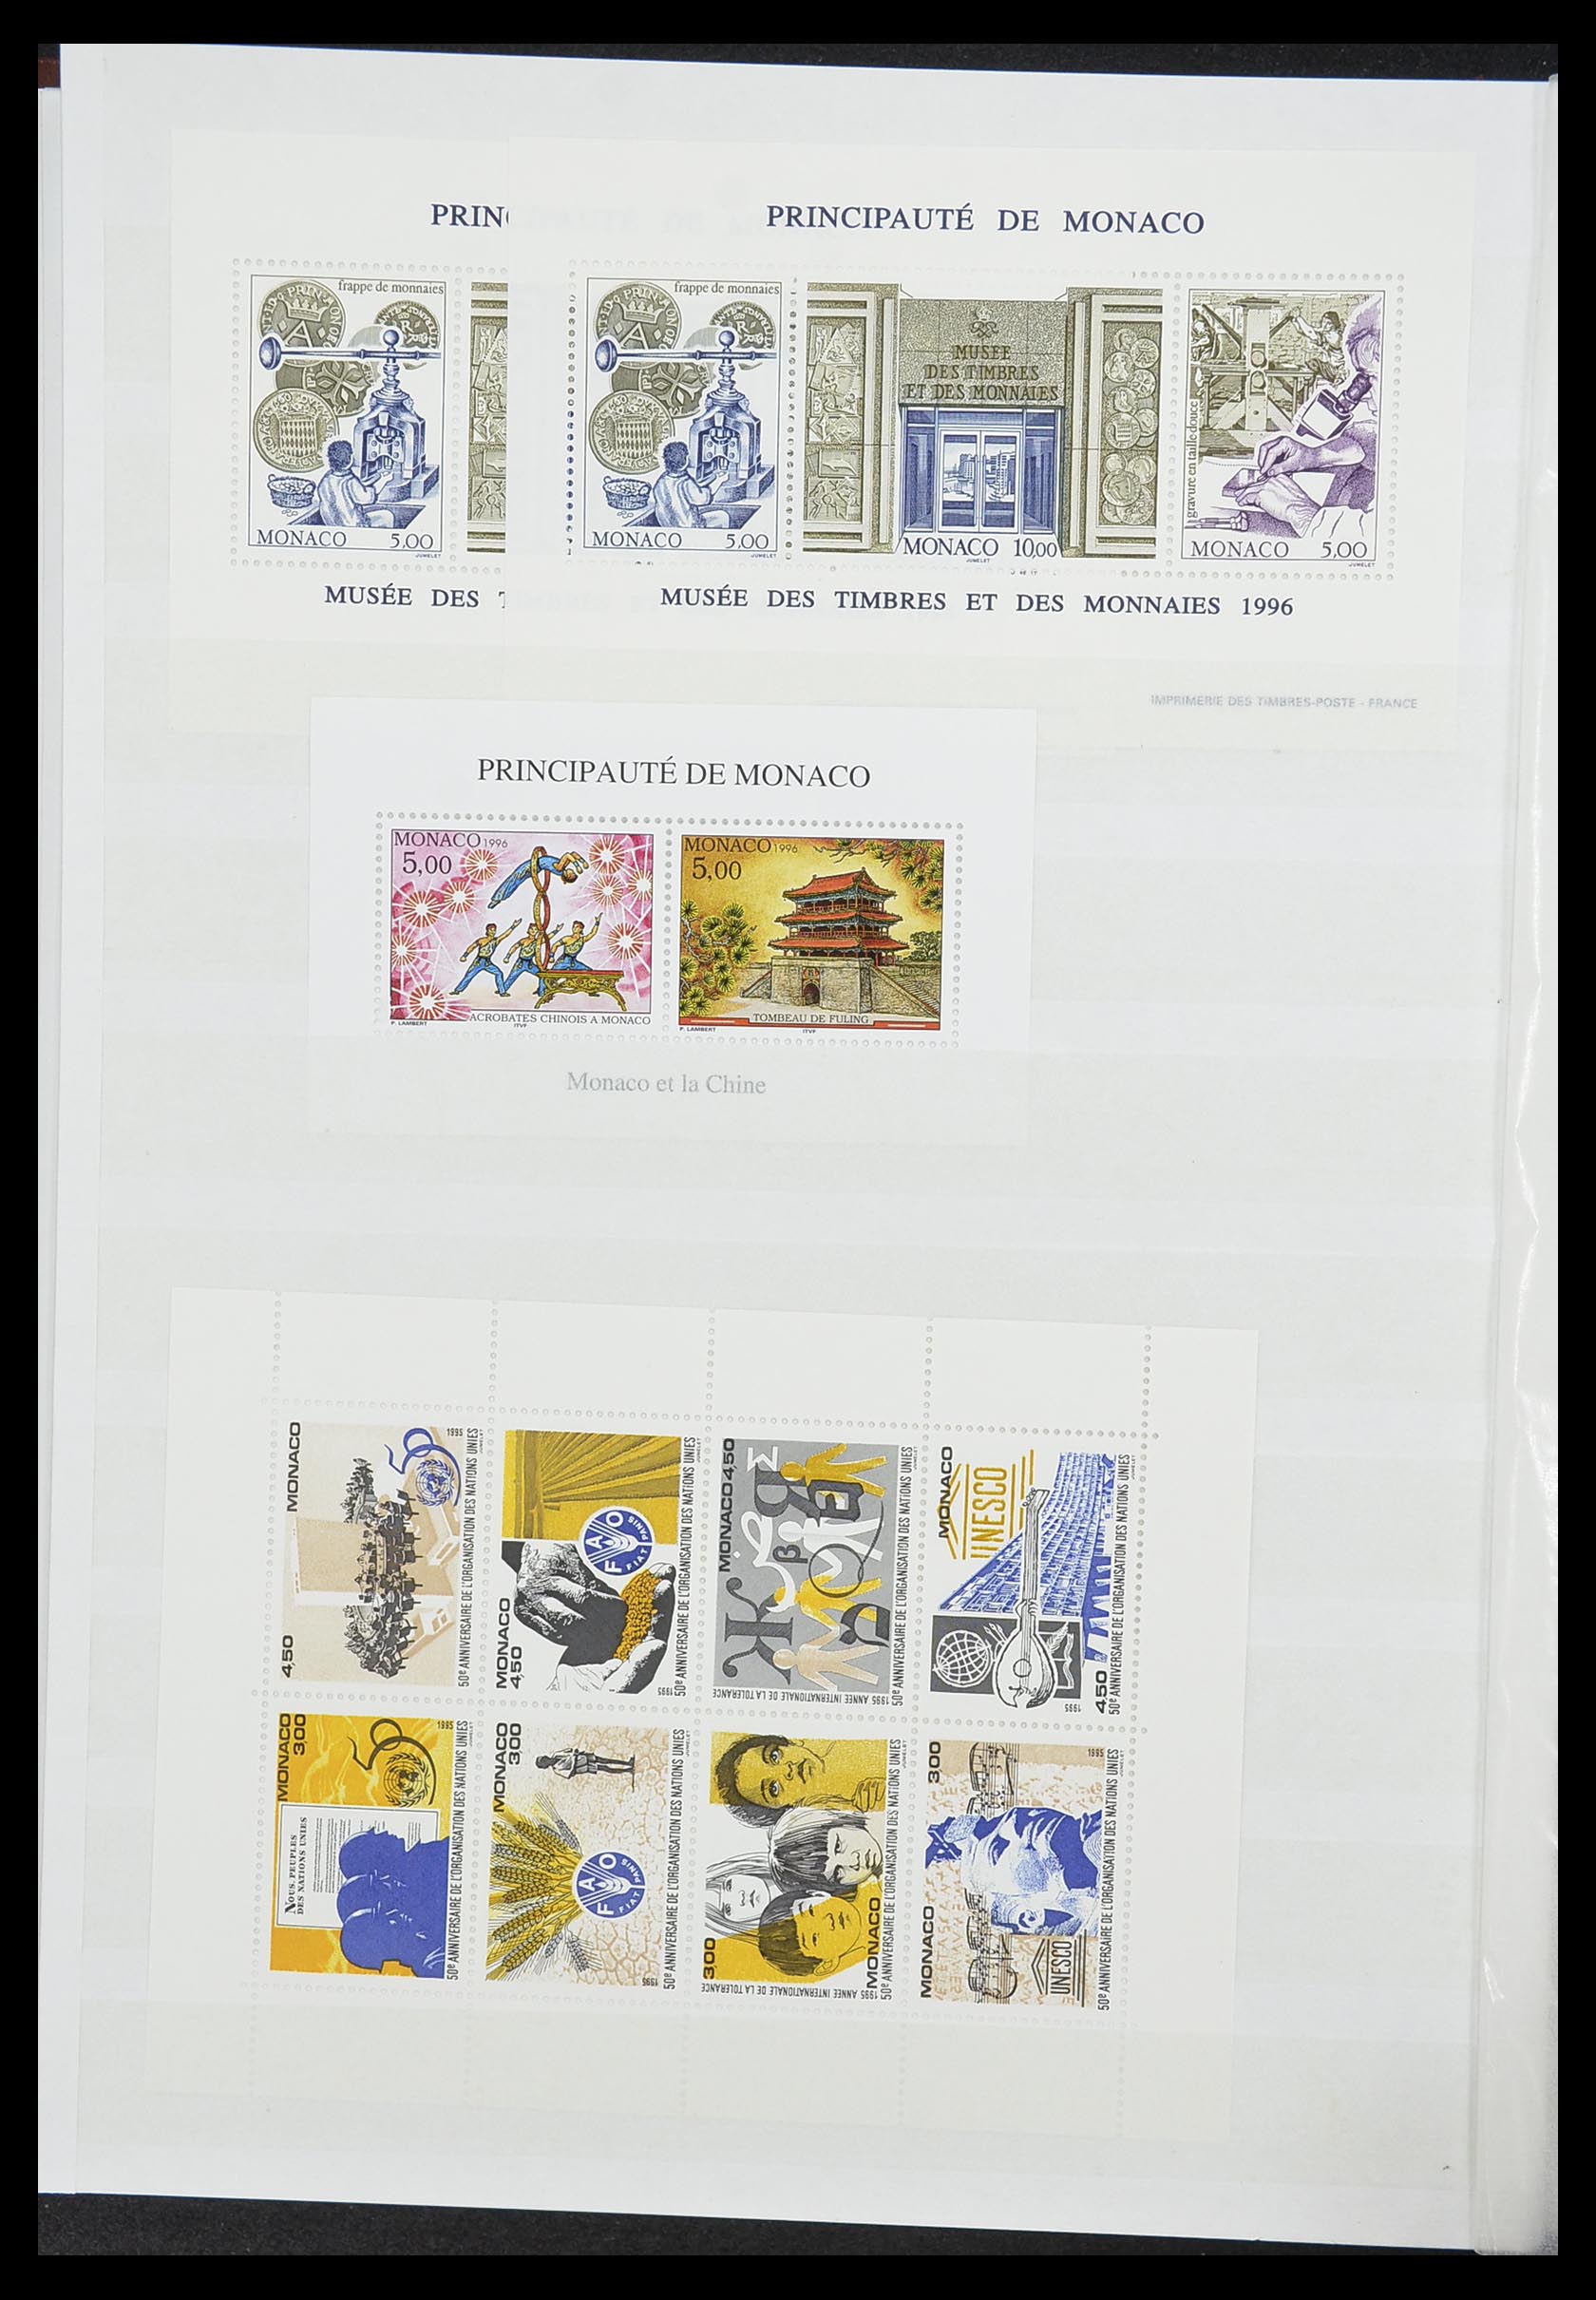 33833 016 - Stamp collection 33833 Monaco souvenir sheets 1979-2015.